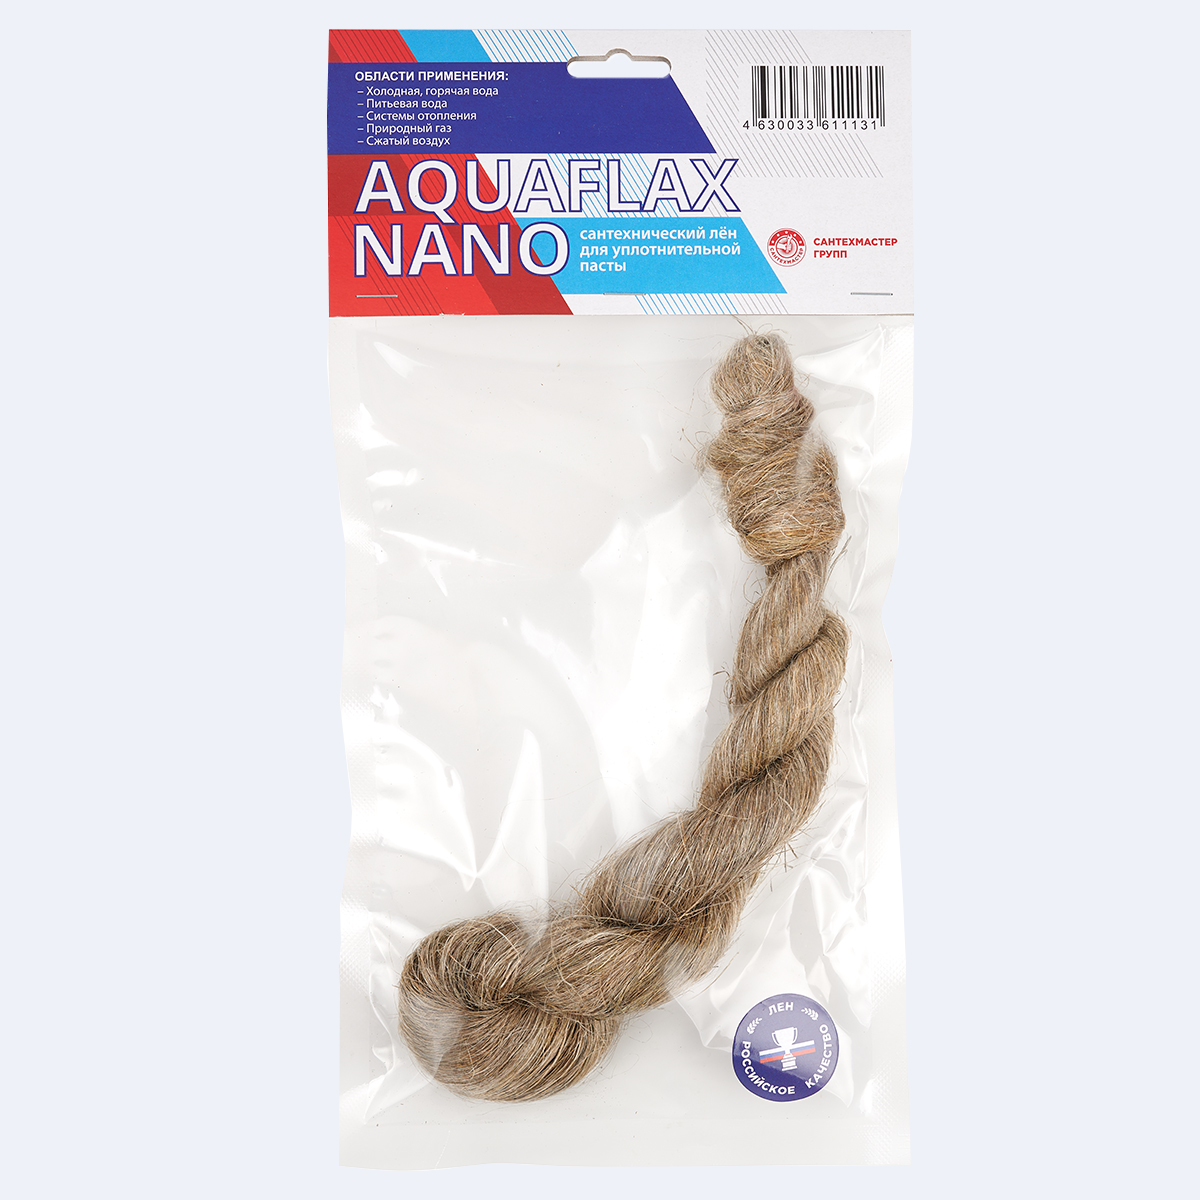  Aquaflax Nano, лён ЕВРО, пакет, 50 гр.